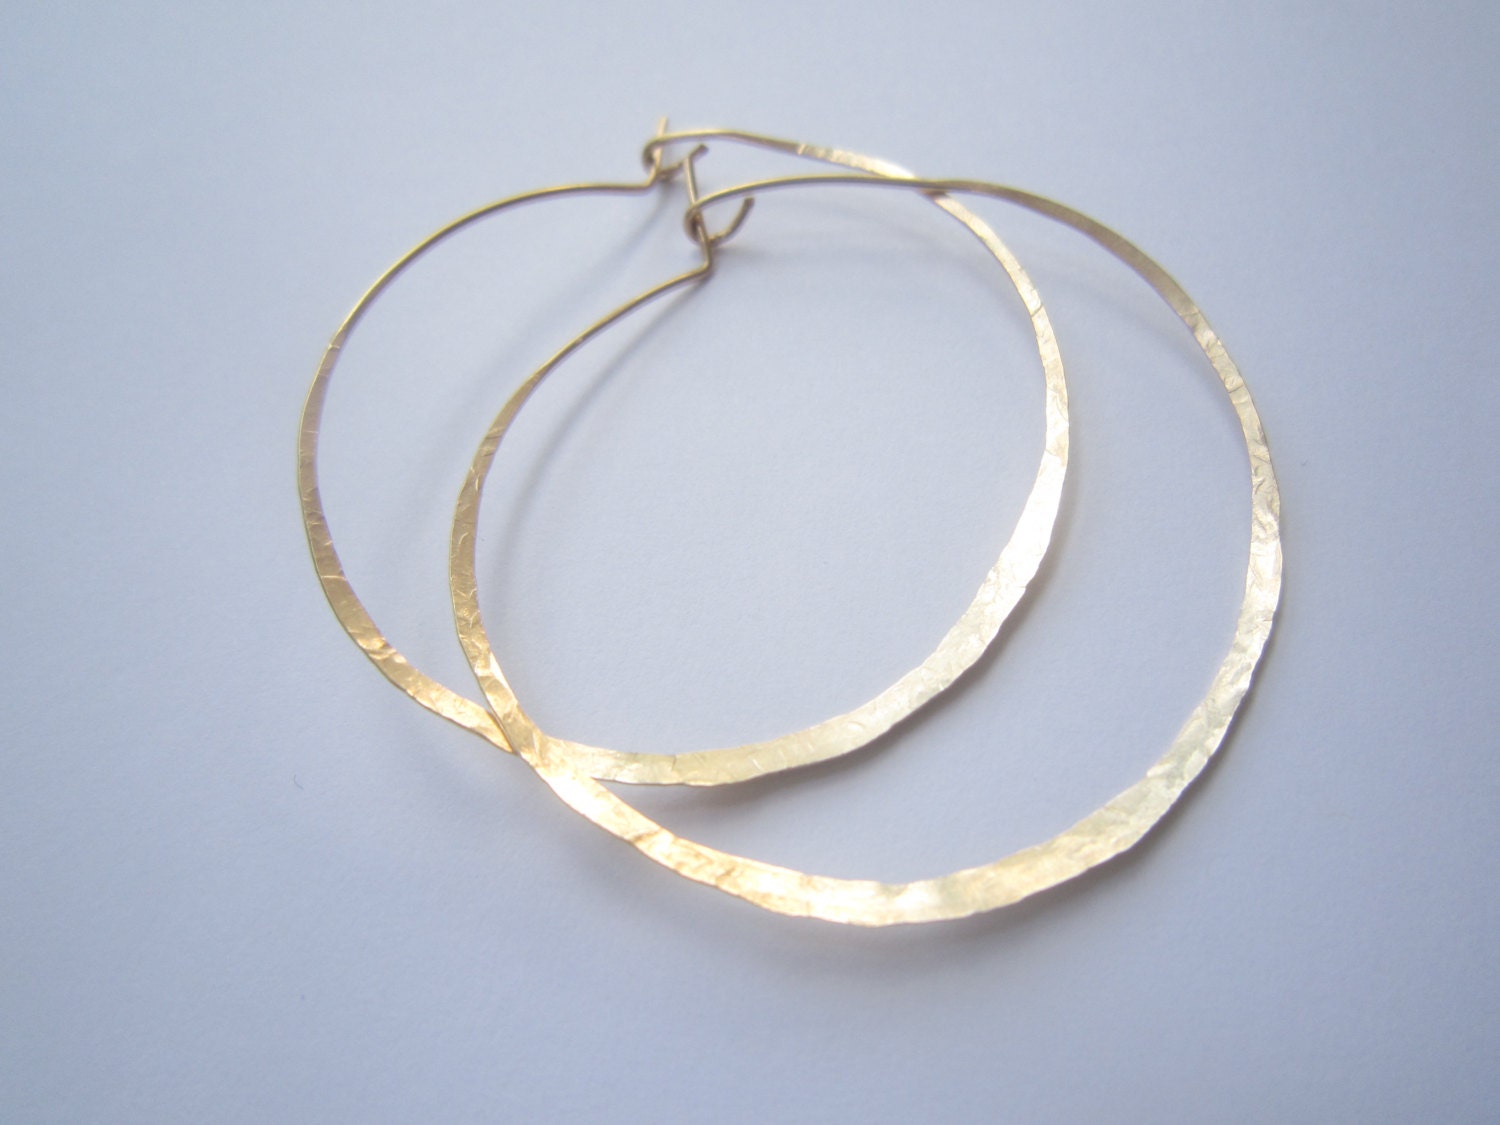 Big Gold Hoop Earrings Large Gold Filled Hoop Earrings. - Etsy